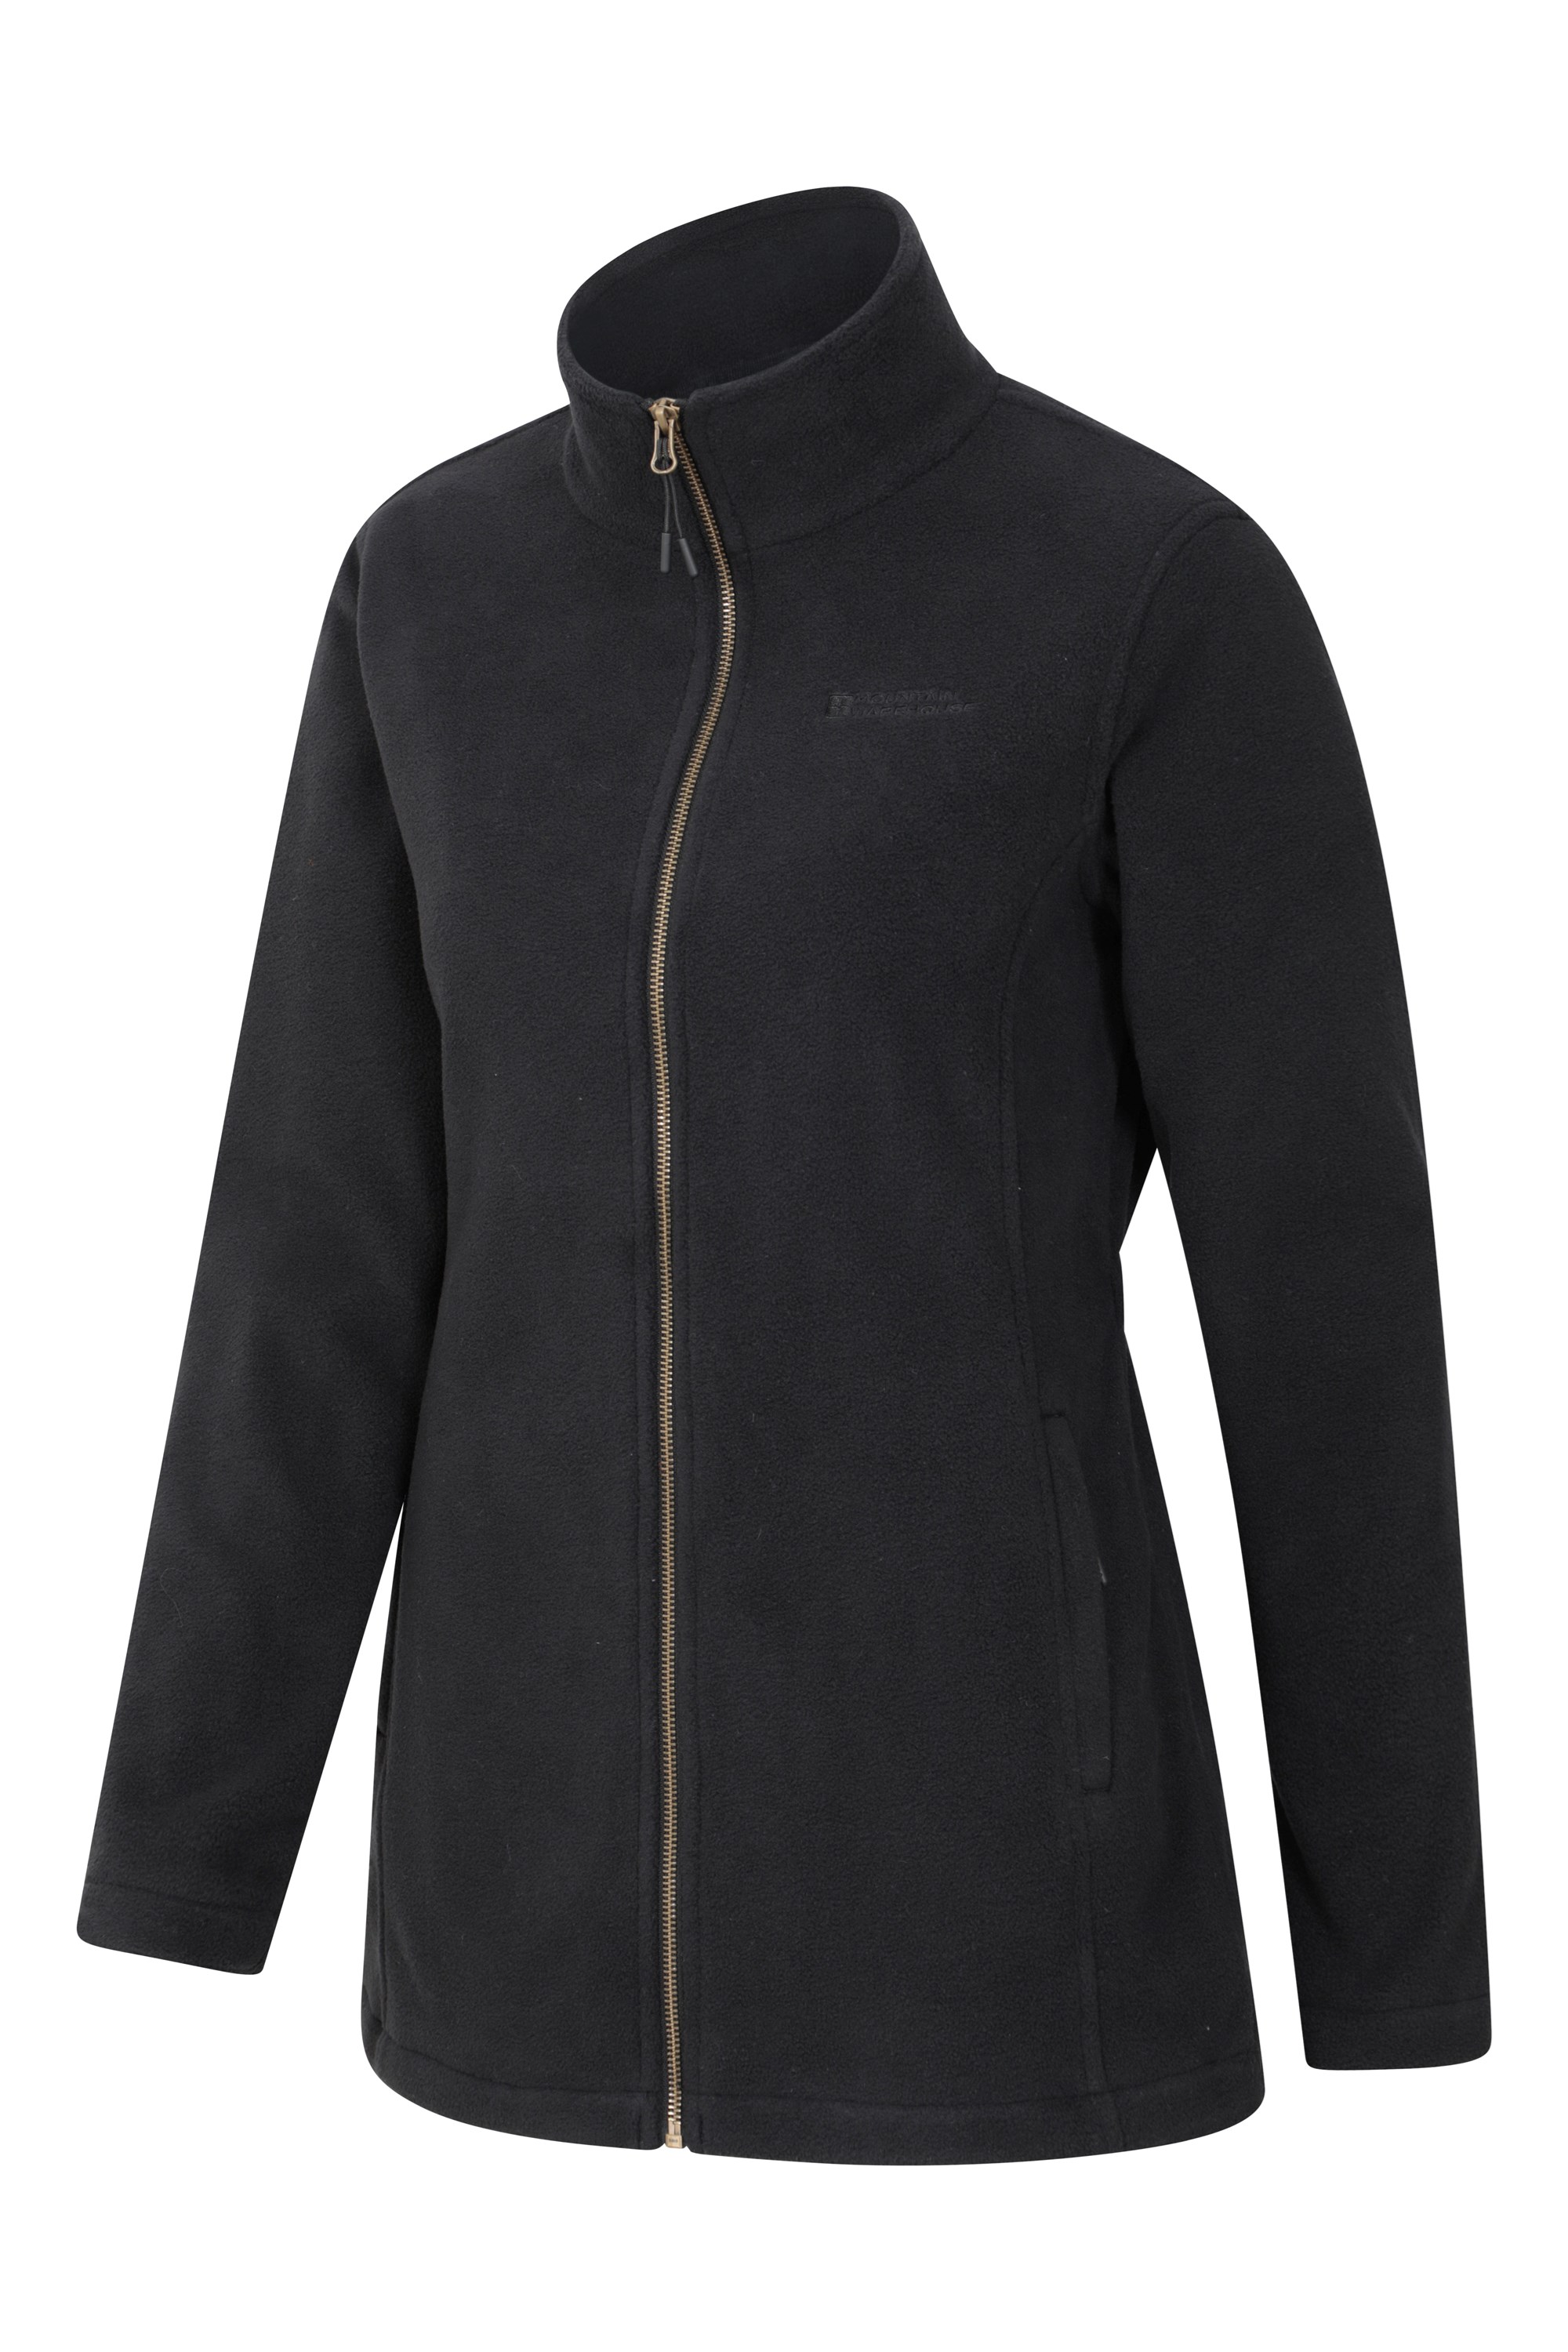 Mountain Warehouse Birch Womens Longline Fleece Jacket - Full-zip